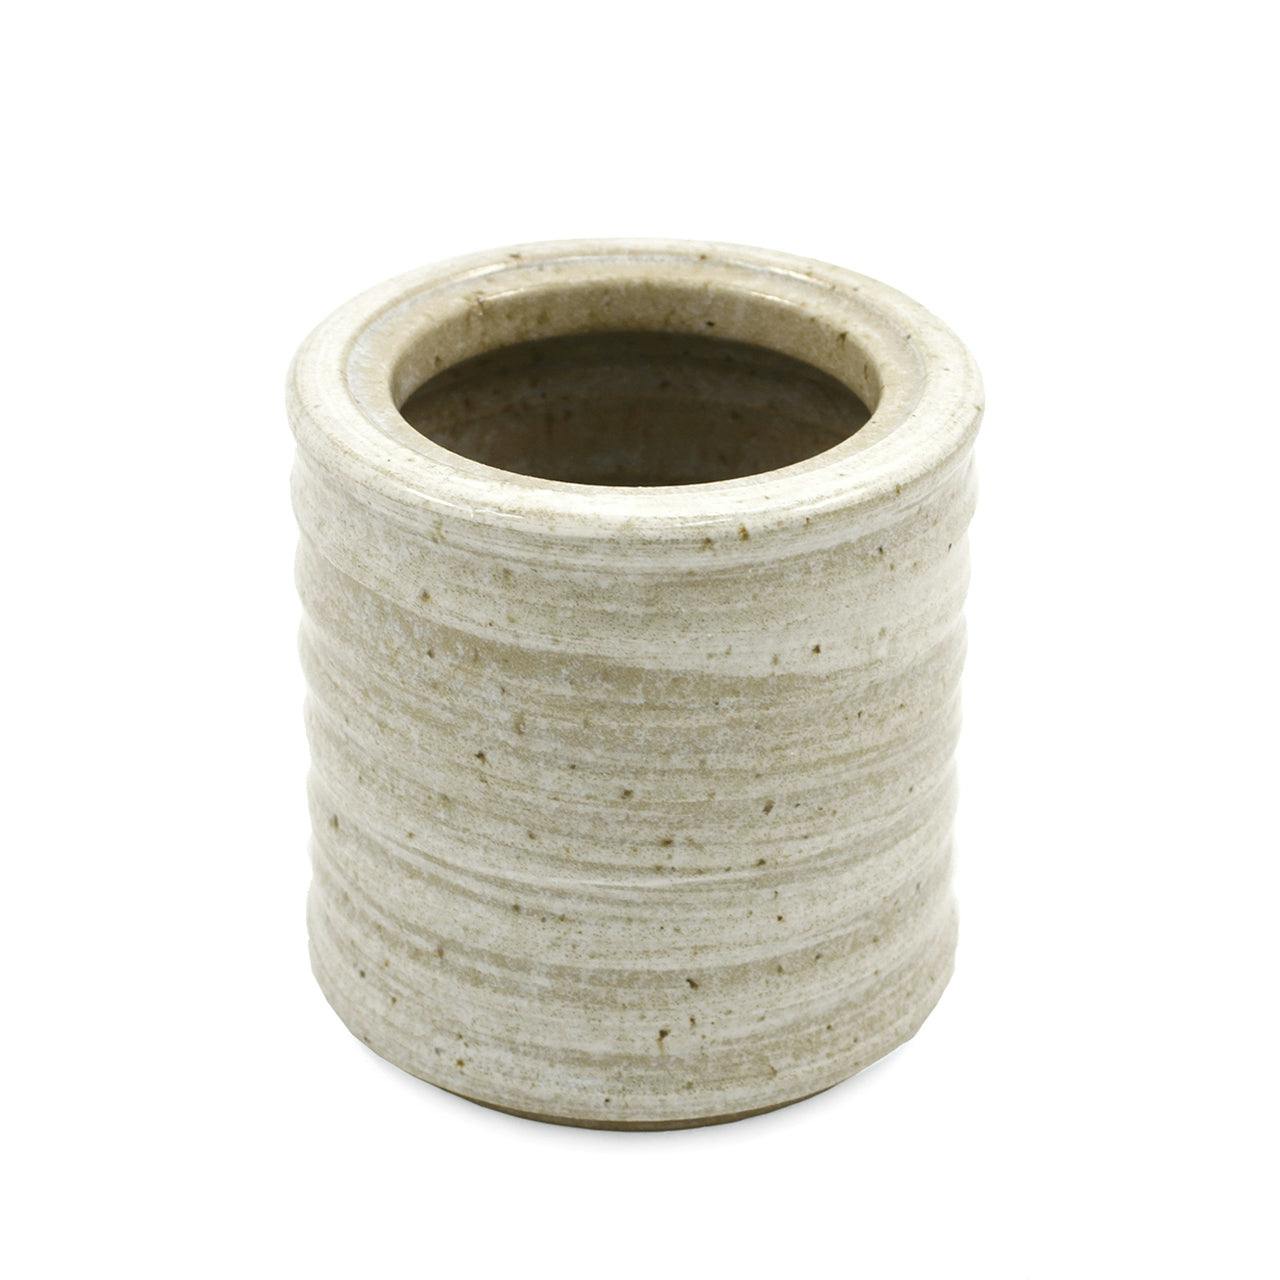 日本 烧酒 陶瓷 热酒壶 Seiji Brushstroke Ceramic Sake Warmer / Cooler 27 fl oz for Warm Sake Set